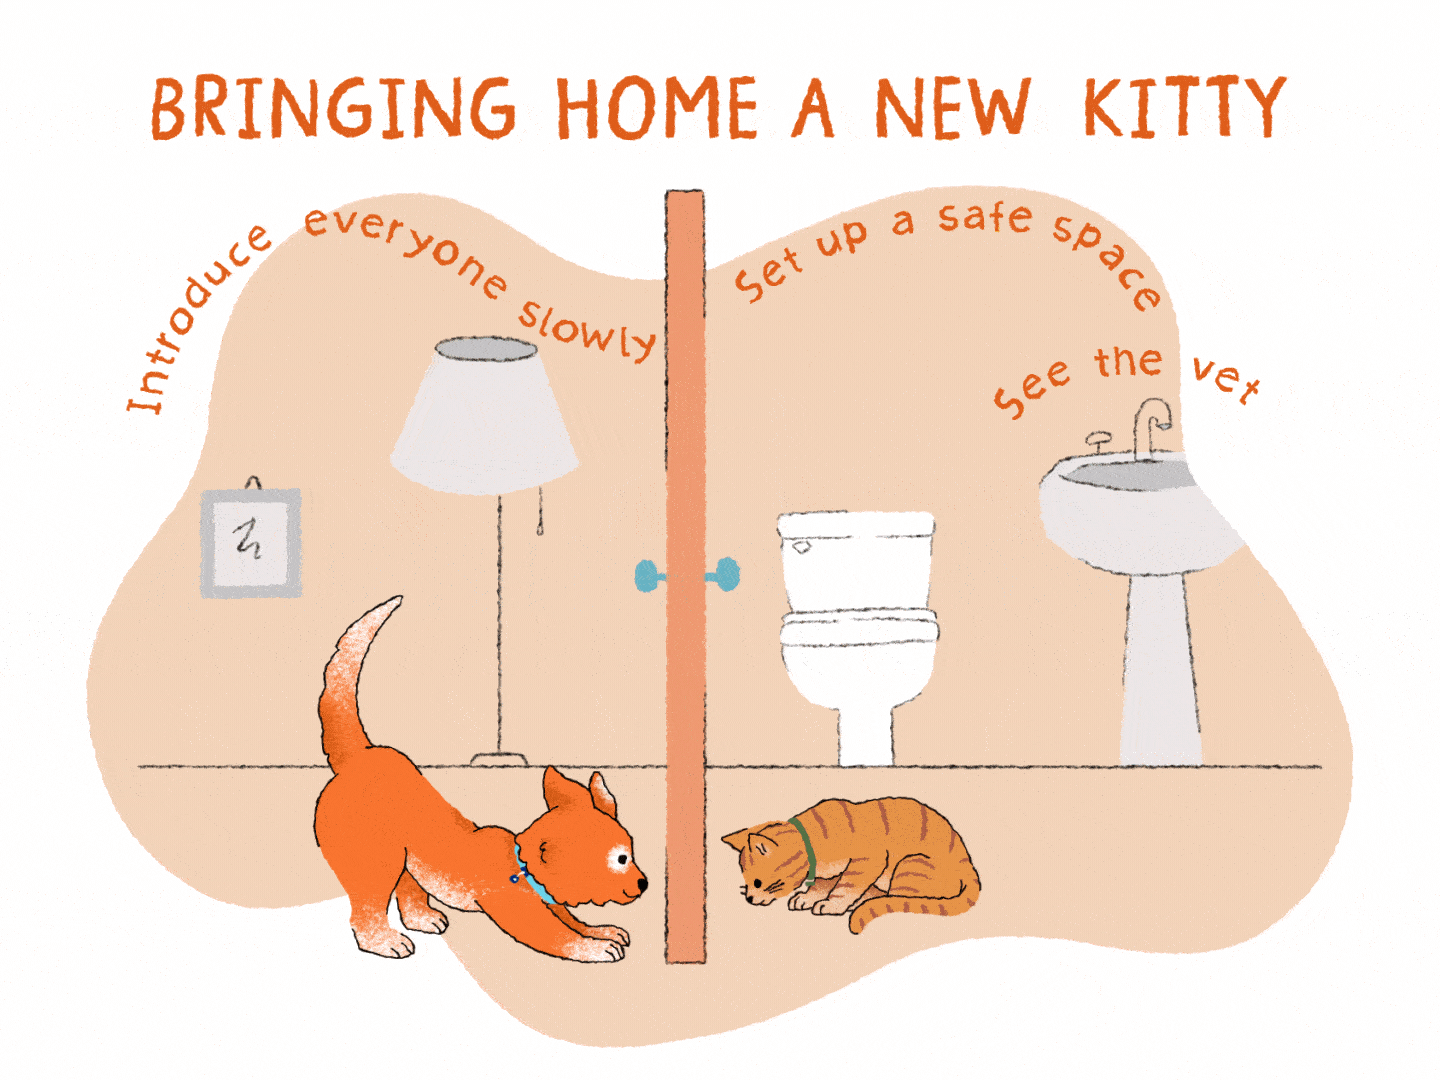 orange puppy meets orange cat illustration